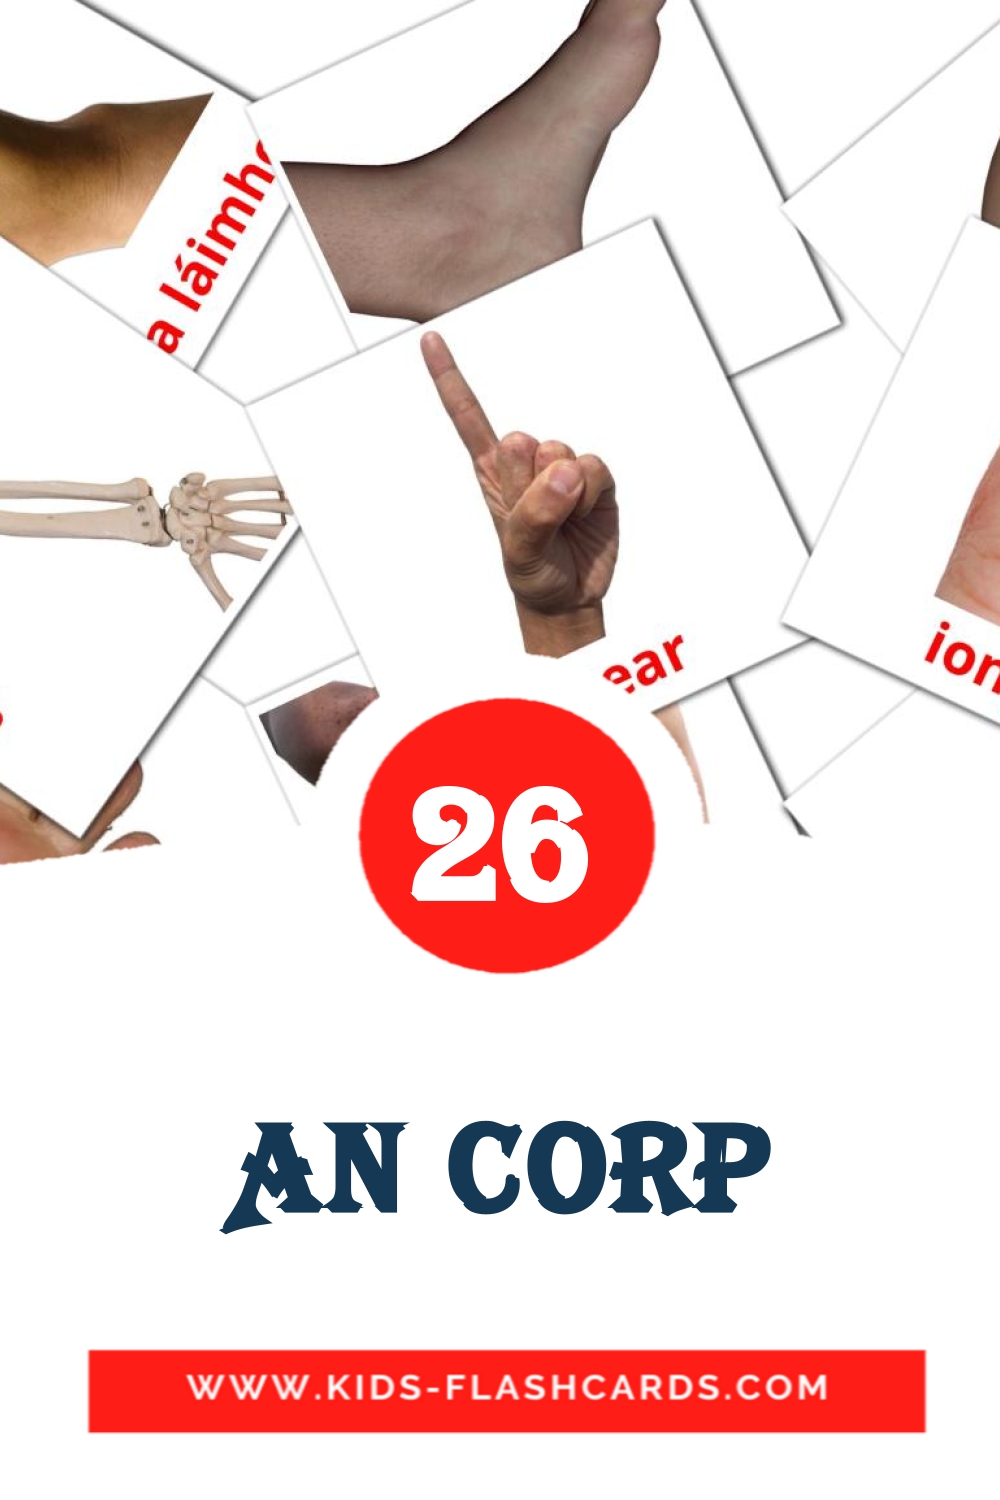 26 An Corp fotokaarten voor kleuters in het iers